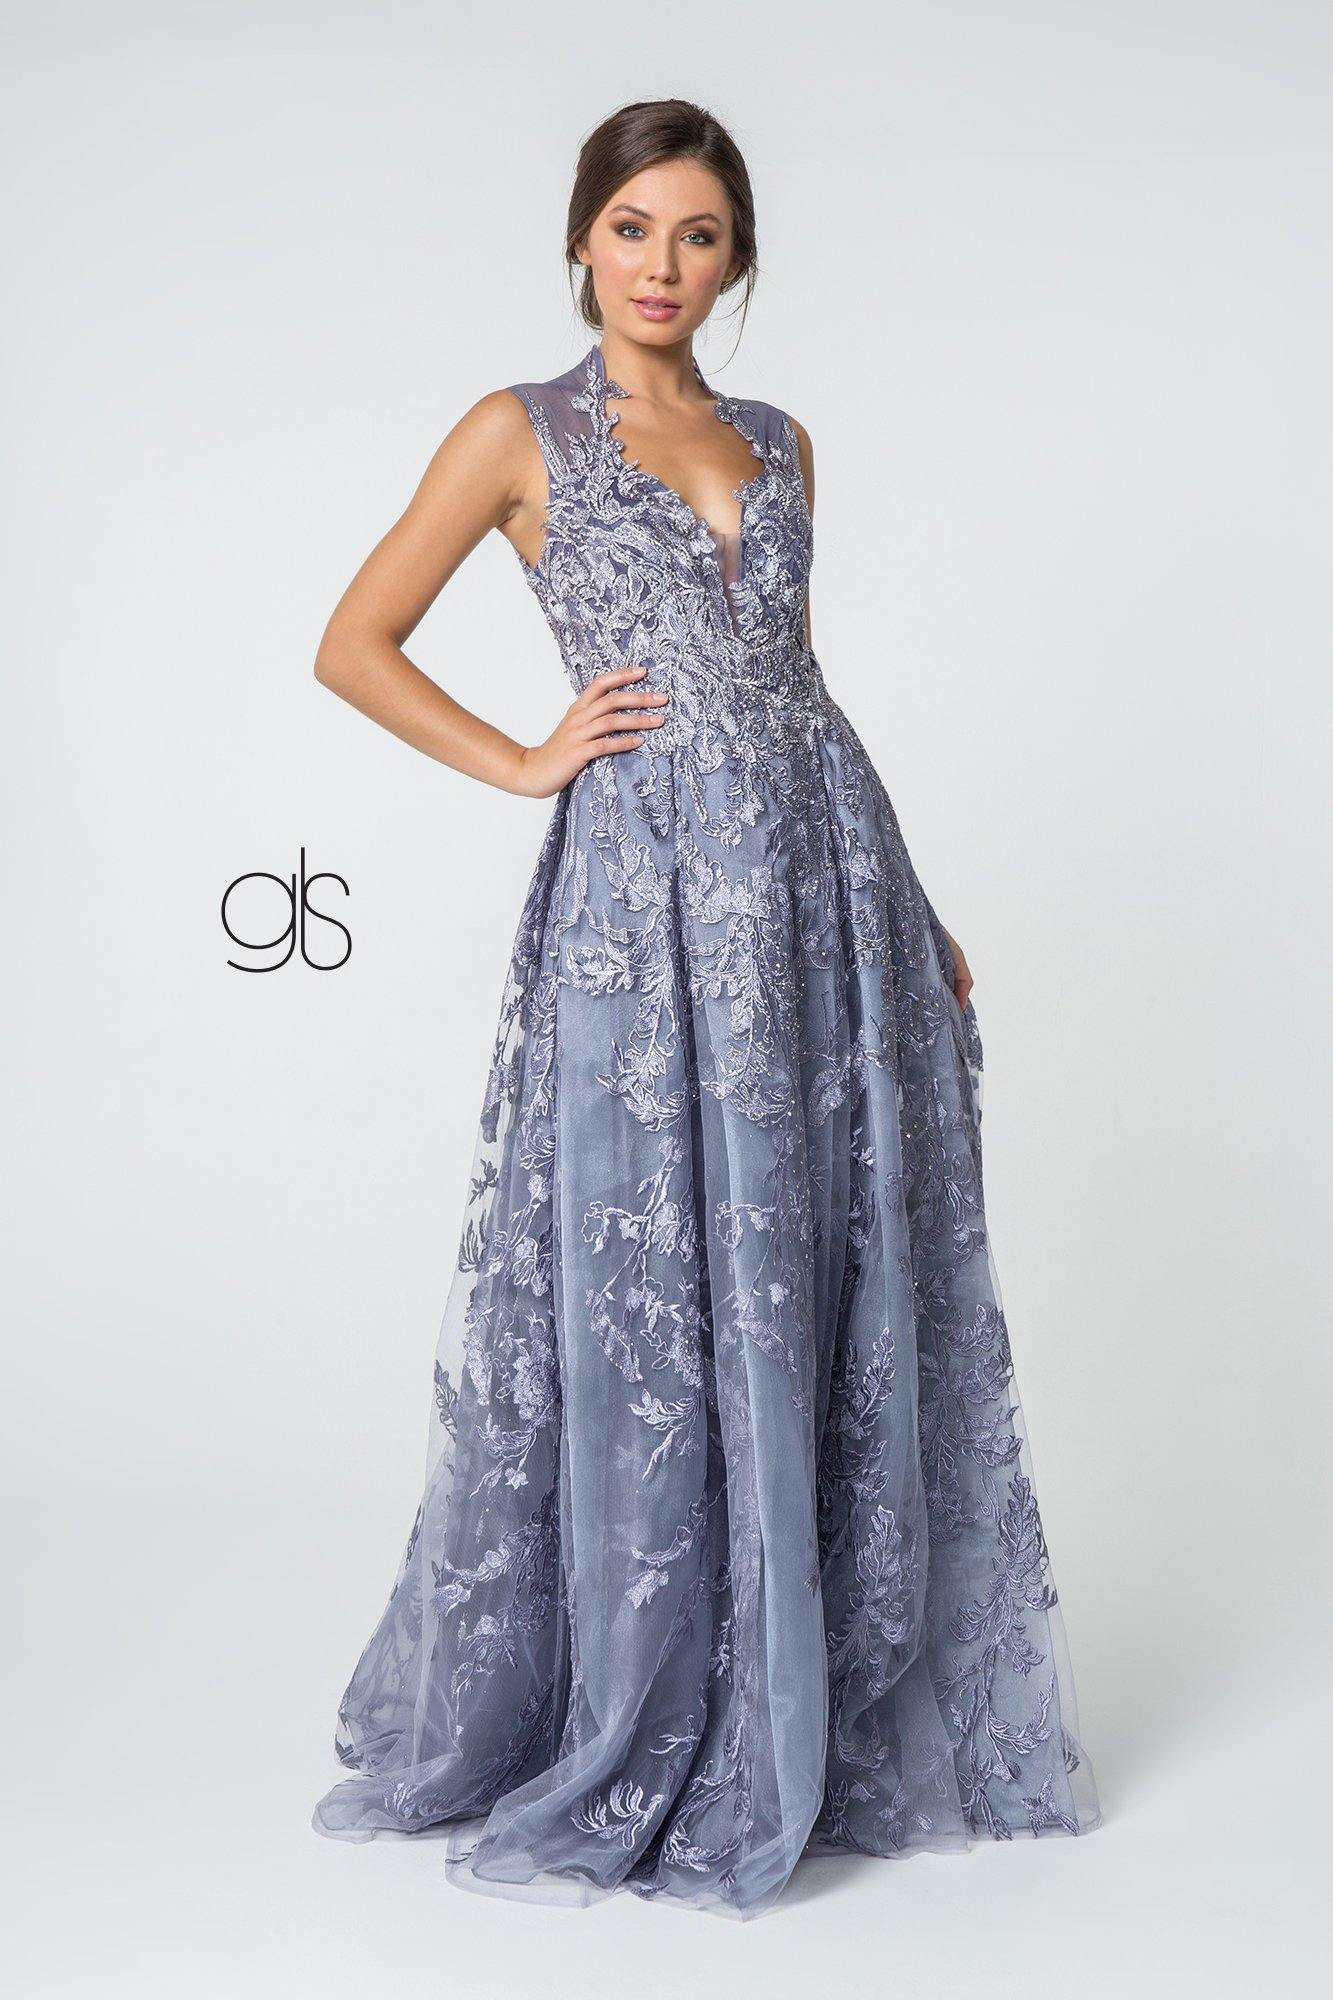 Embroidered Illusion Deep V-Neck Long Prom Dress - The Dress Outlet Elizabeth K